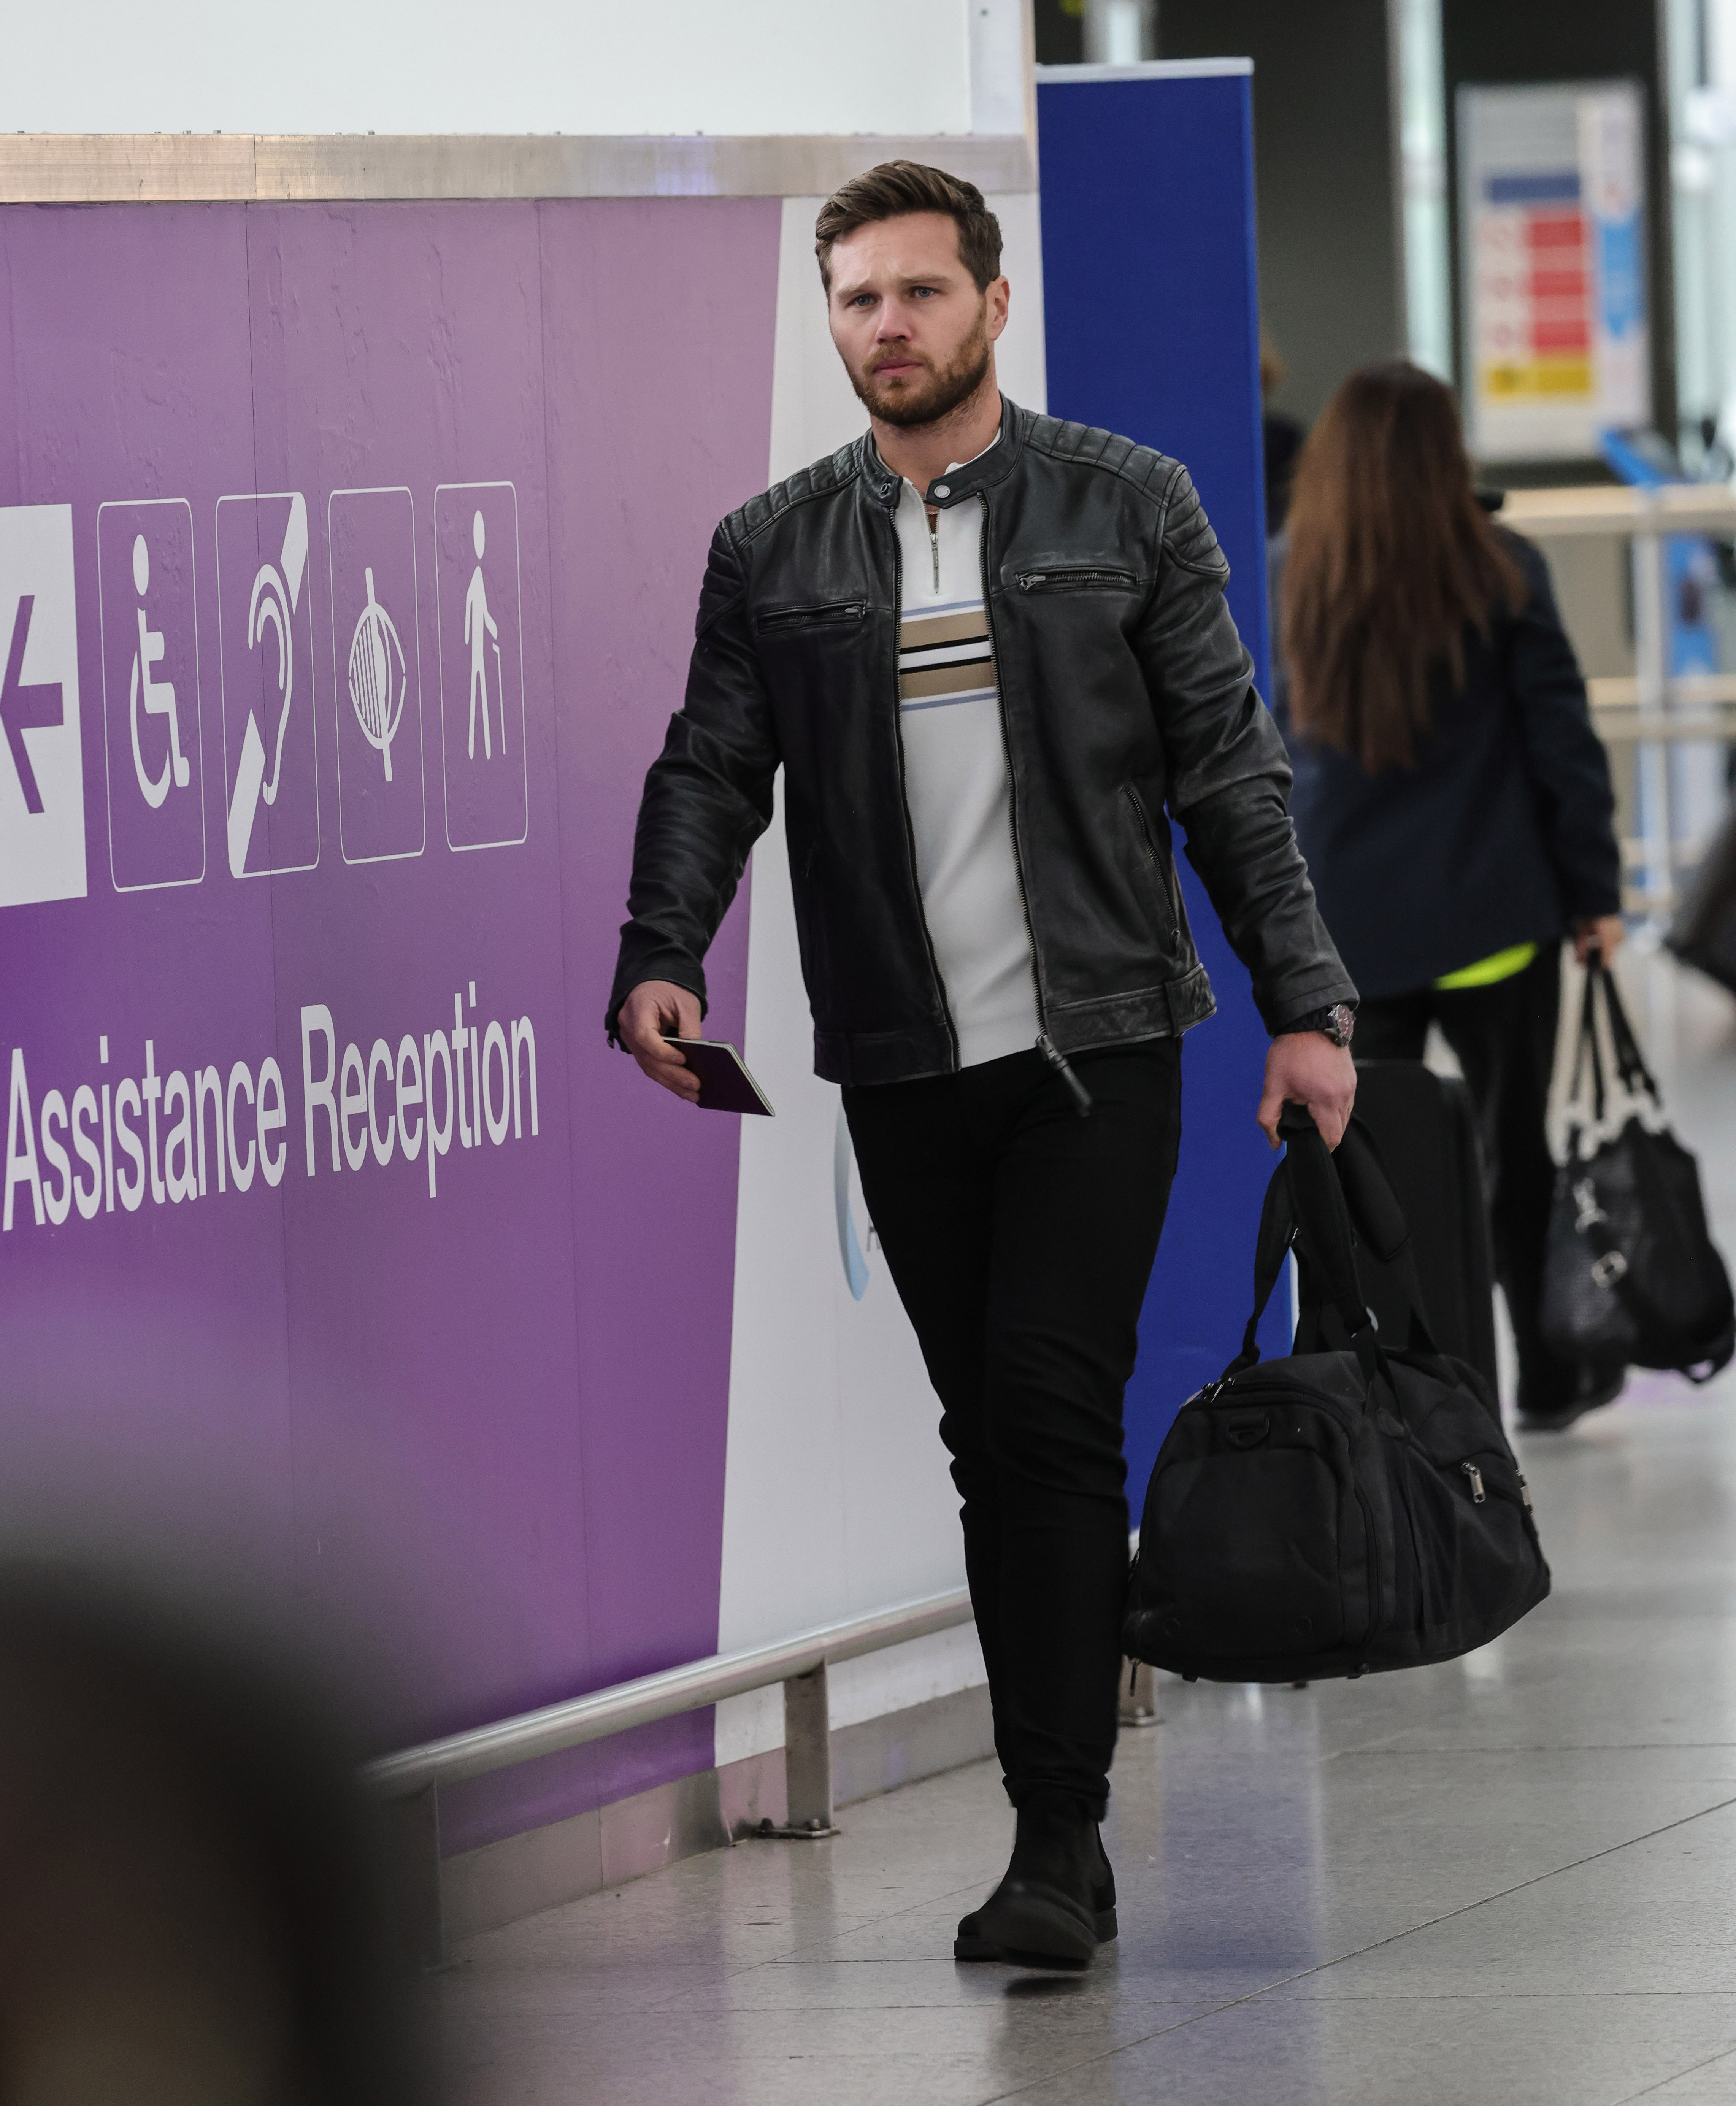 Keanu trug seinen Reisepass und eine Reisetasche bei sich, als er offenbar aus dem Land fliehen wollte